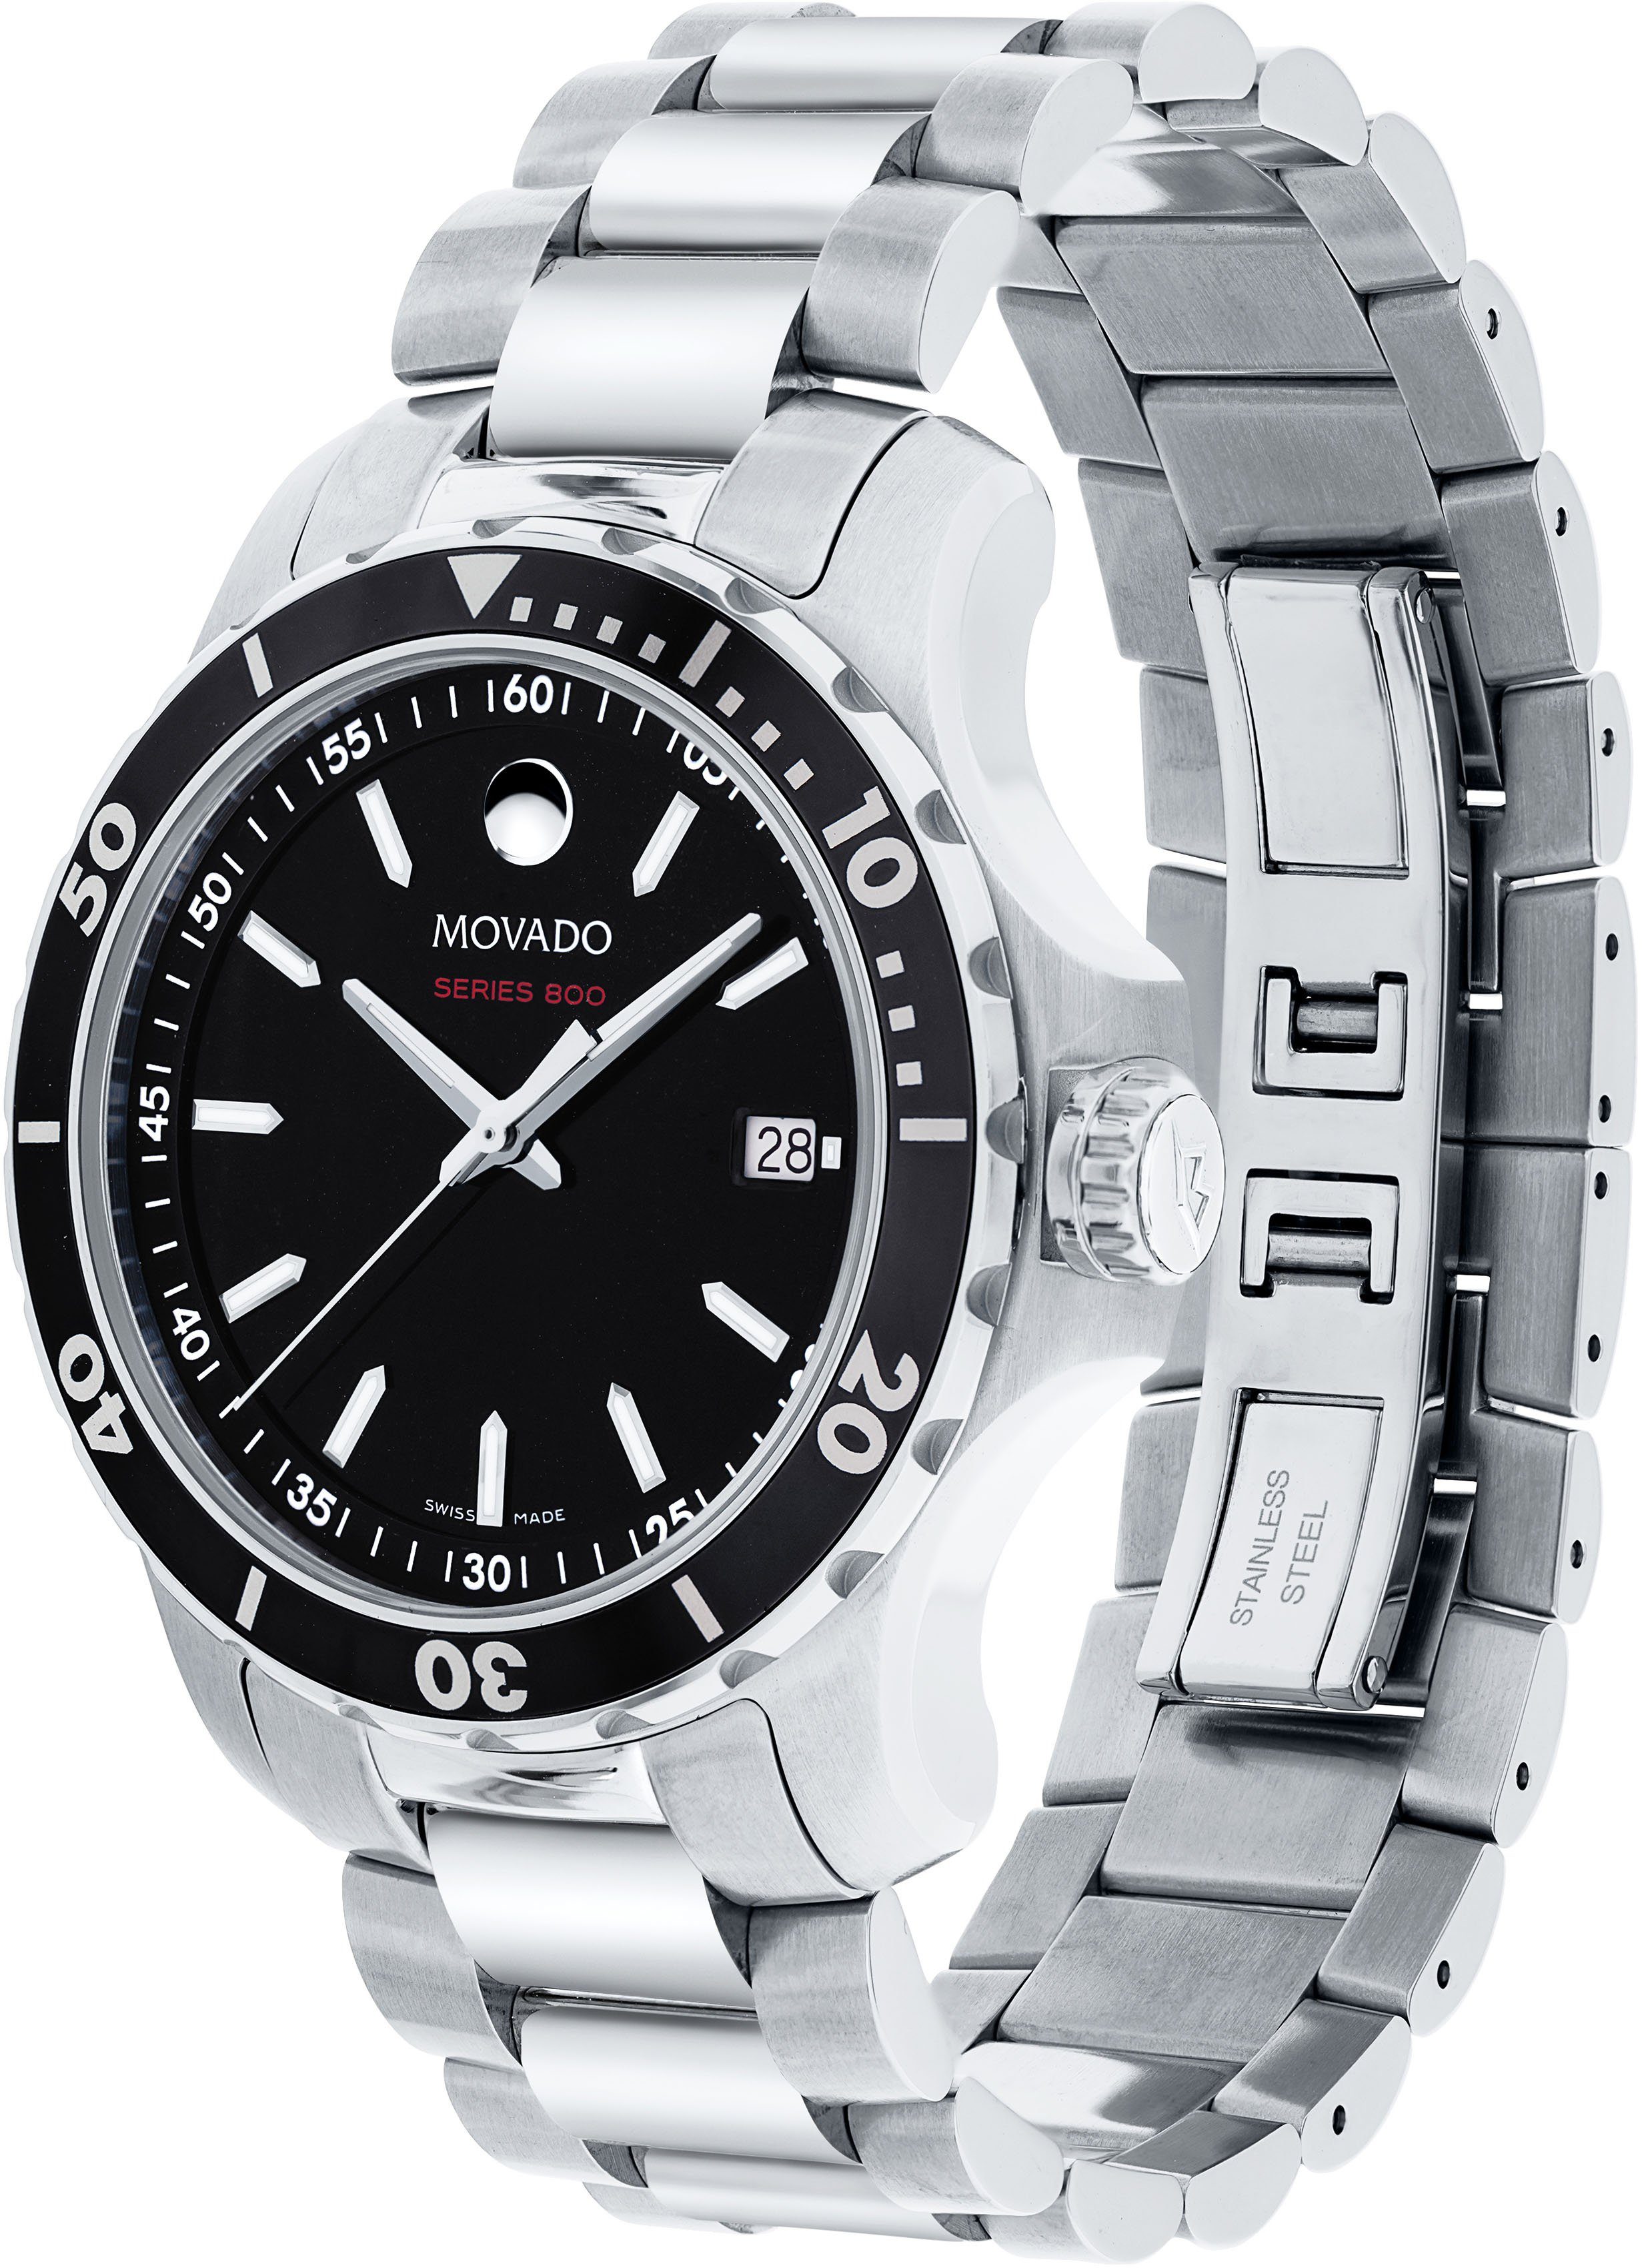 Herren Uhren MOVADO Schweizer Uhr Series 800, 2600135